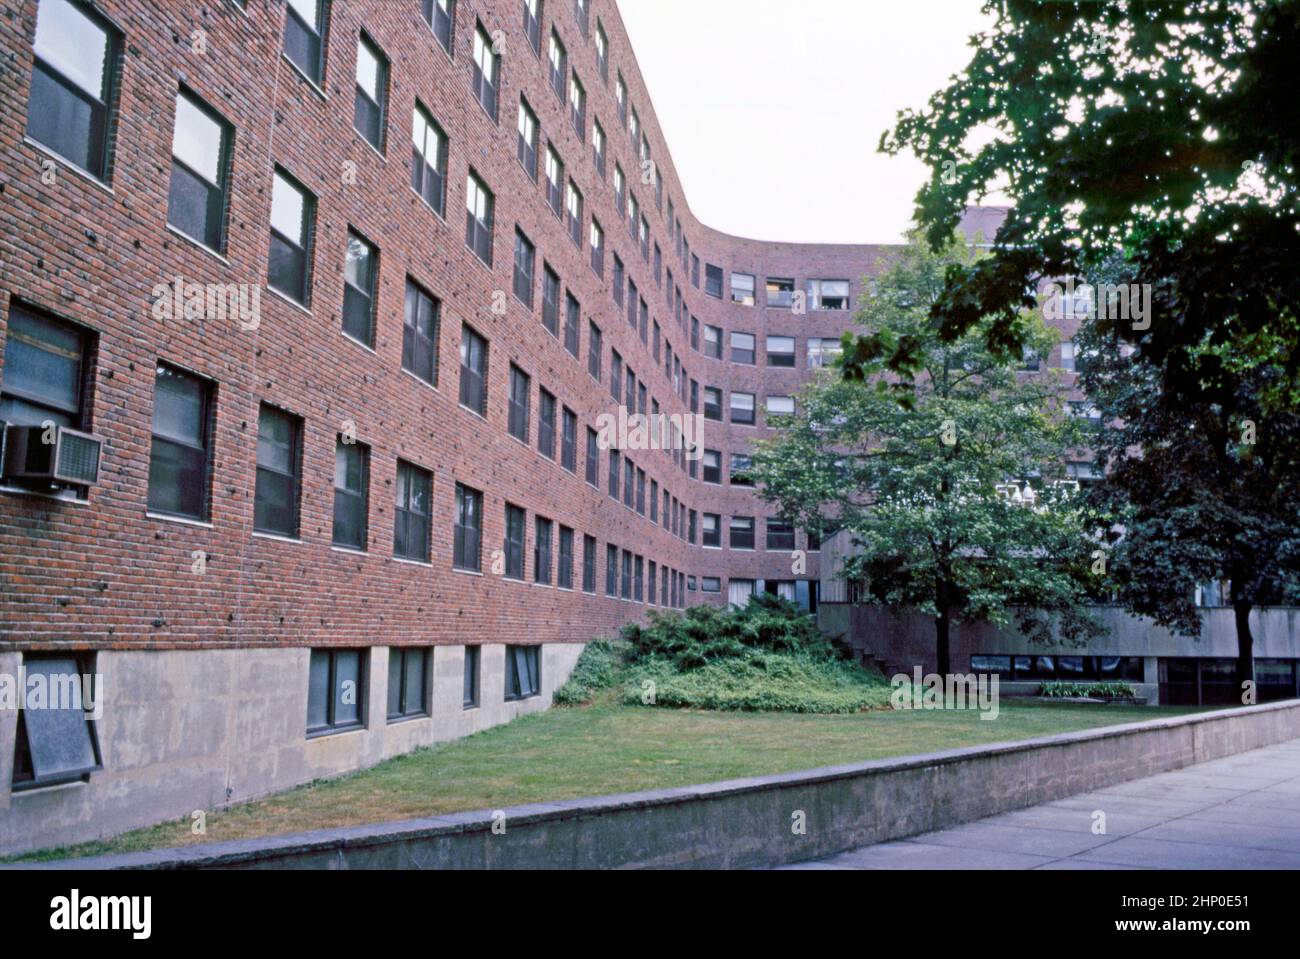 Une vue de 1982 des courbes distinctives de Baker House, au Massachusetts Institute of Technology, Cambridge, Massachusetts, Etats-Unis. Lvar Aalto a conçu le dortoir de Baker House en 1946 alors qu'il était professeur au Massachusetts Institute of Technology (MIT). Hugo Alvar Henrik (Ivar) Aalto (1898–1976) est un architecte et designer finlandais. Le dortoir était l'un de ses bâtiments aux Etats-Unis. Le bloc de dortoir est revêtu de briques de la Nouvelle-Angleterre, avec sa texture rugueuse, pour recouvrir les courbes de la serpentine du bâtiment. Cette image est tirée d'une ancienne transparence de couleur amateur – une photographie vintage 1980s. Banque D'Images